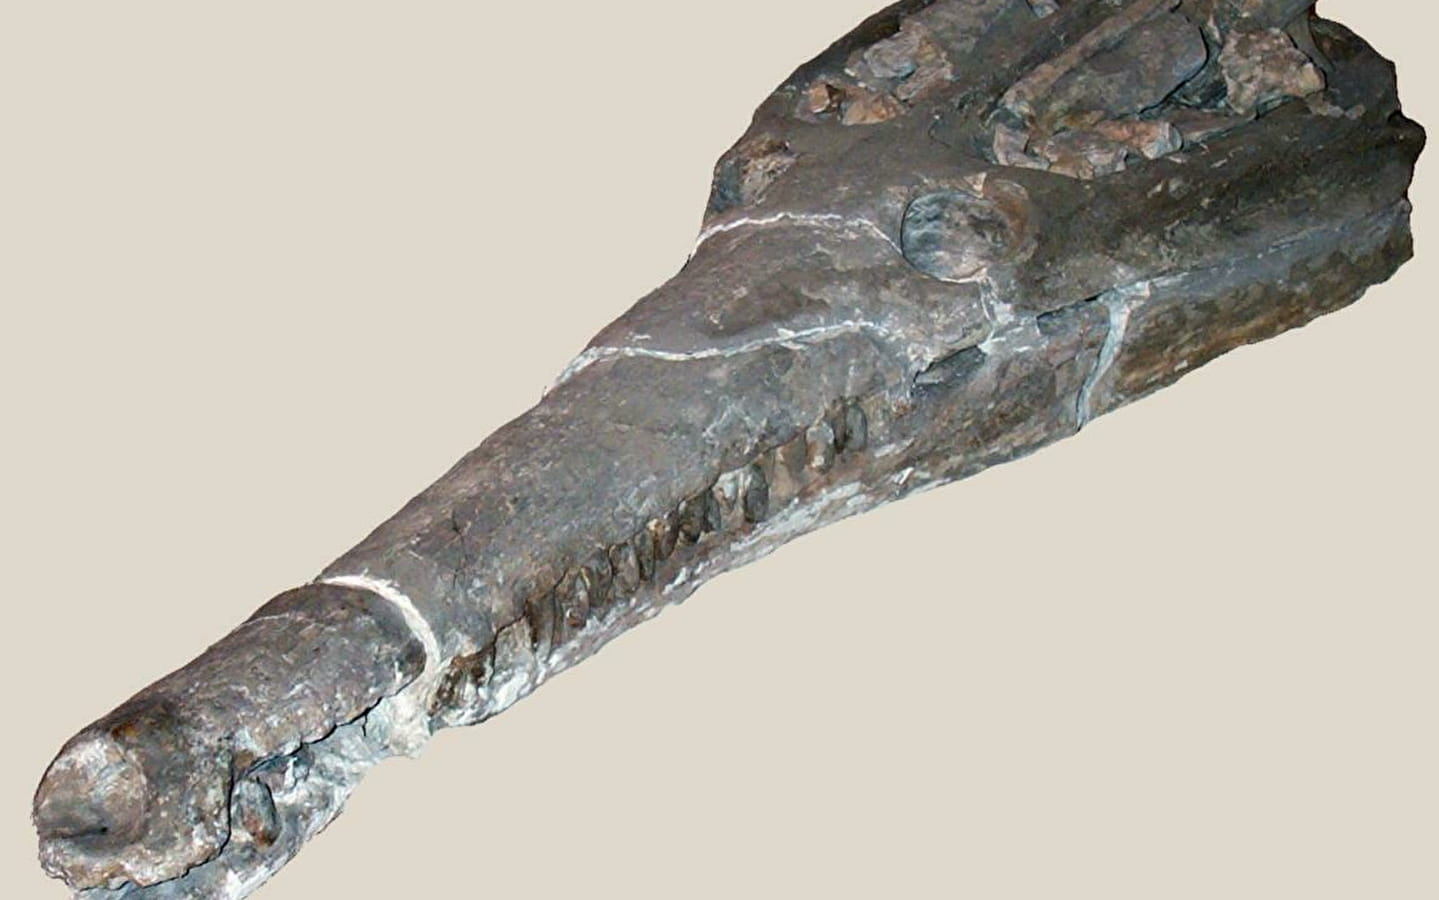 Sténéosaurus Burgensis